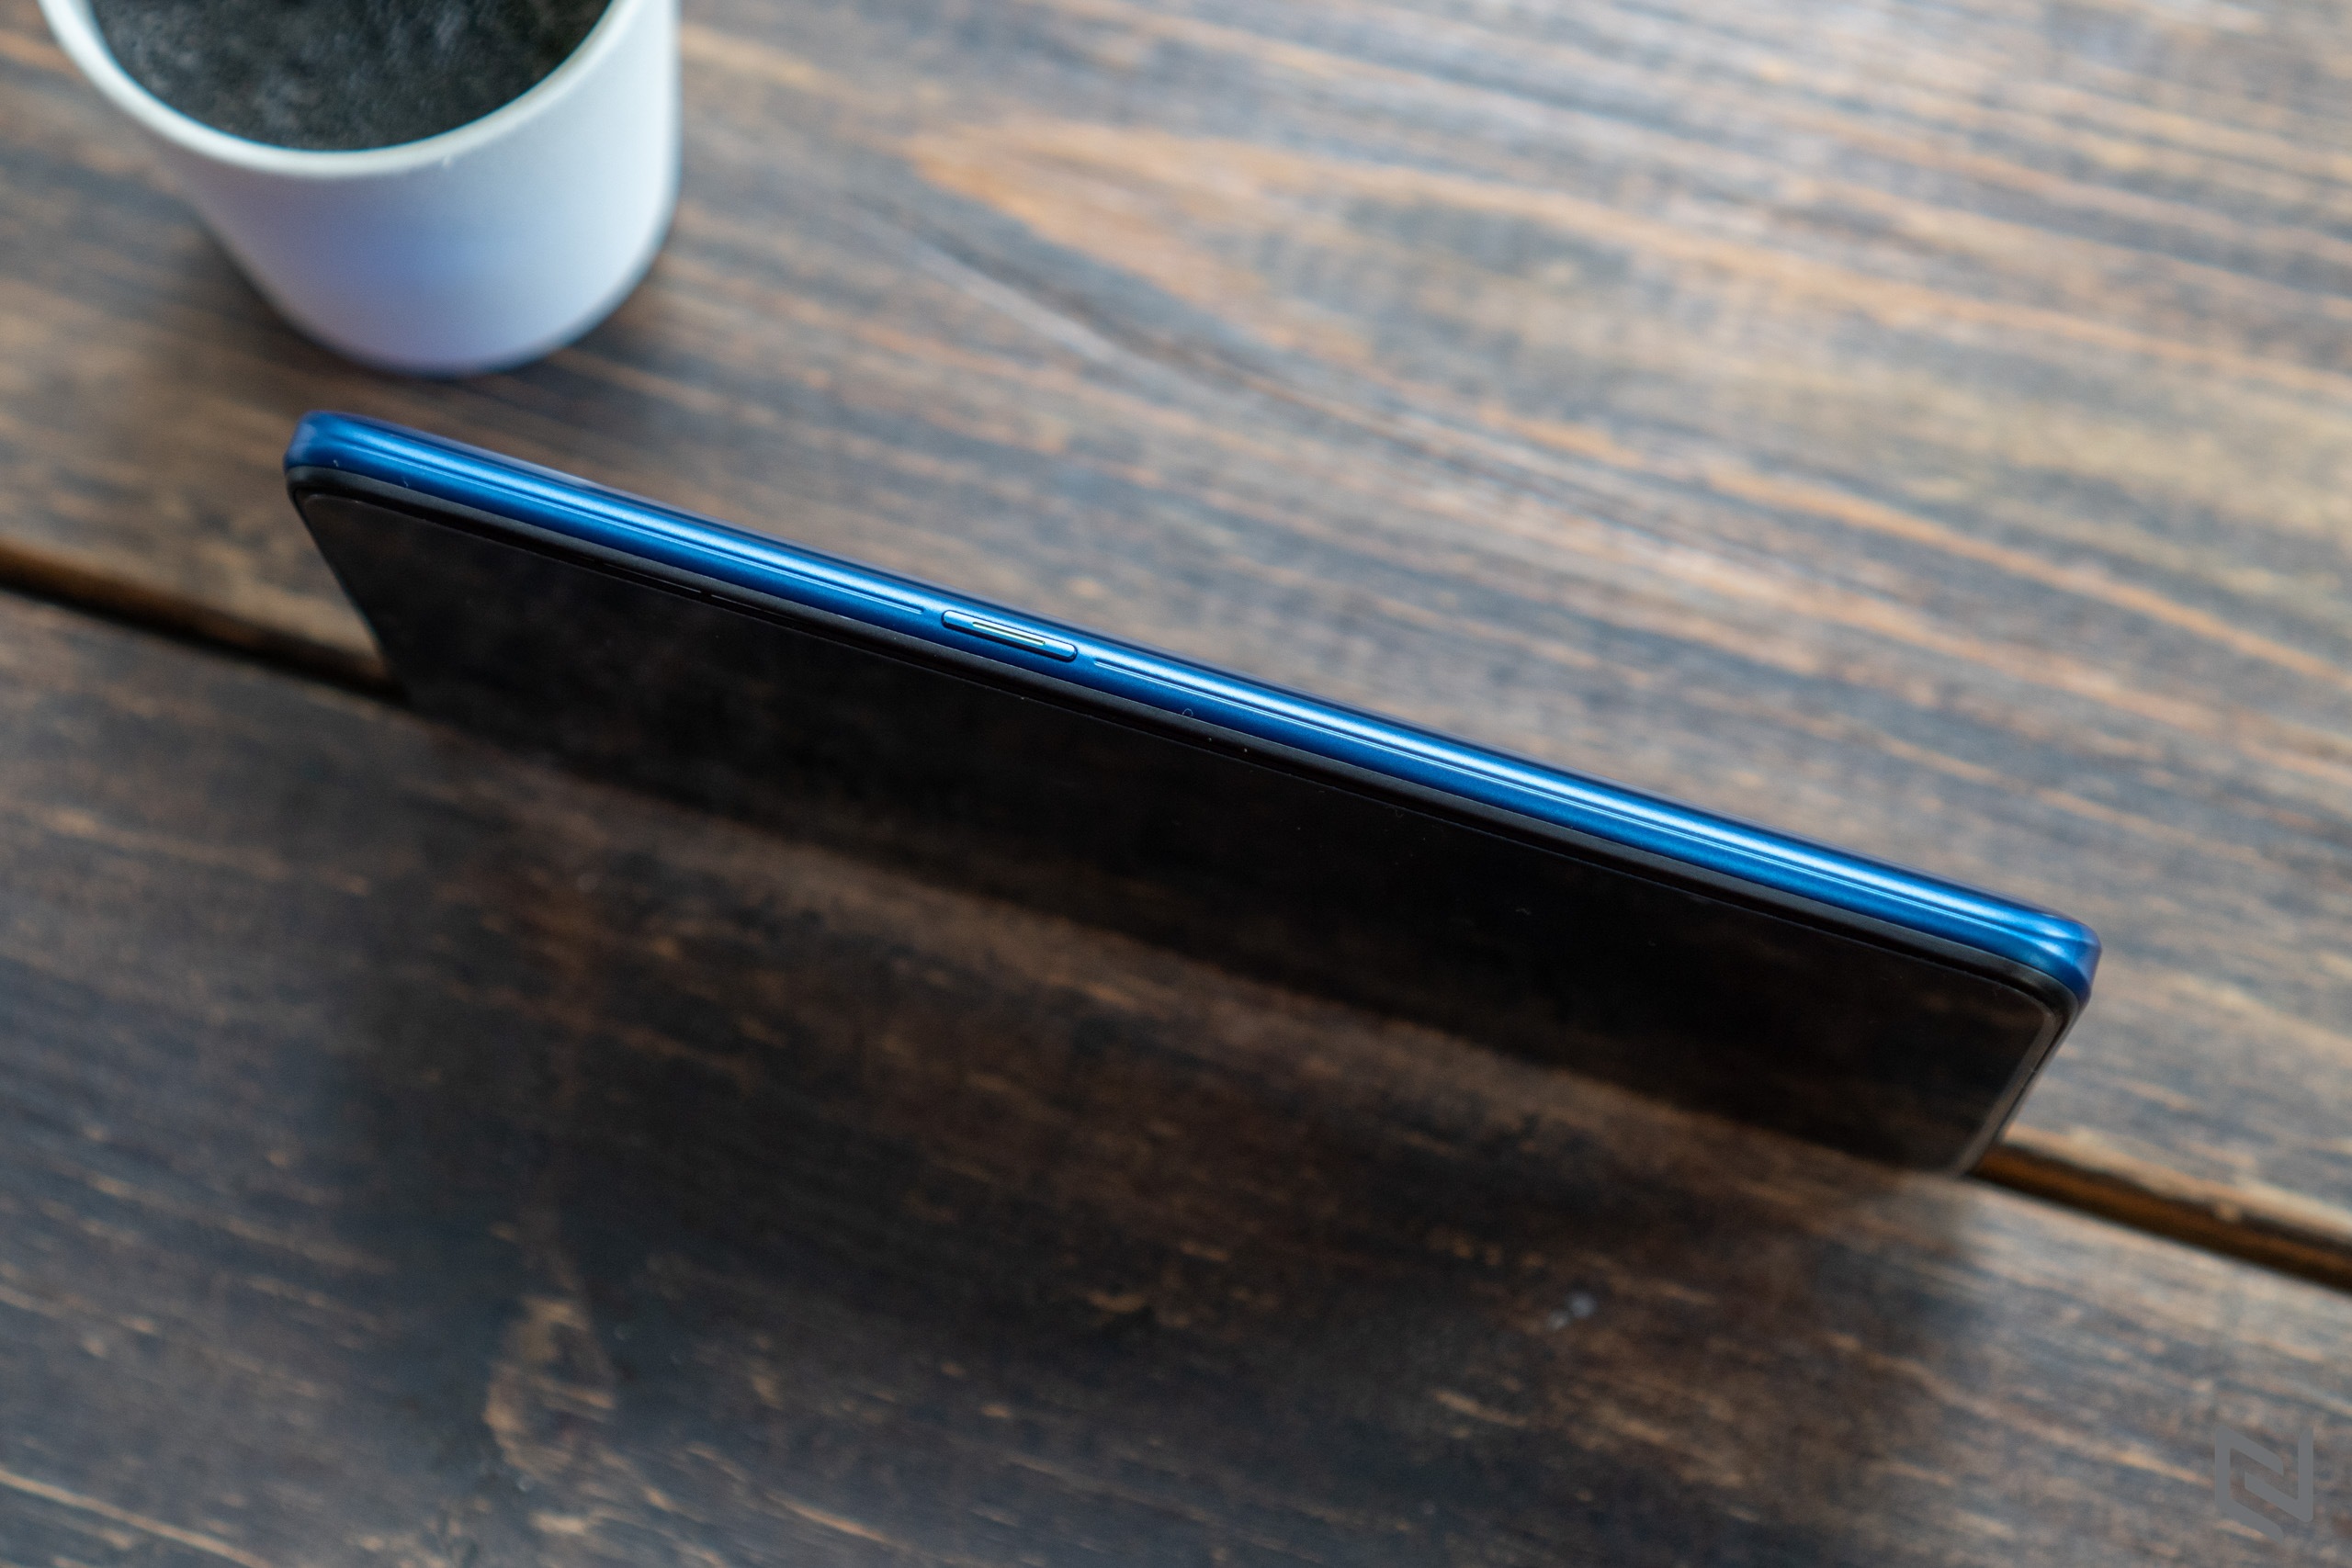 Trên tay OPPO A9 2020: Smartphone đánh dấu 10 năm dòng A với thiết kế trẻ trung, hiệu năng mạnh mẽ, pin khủng